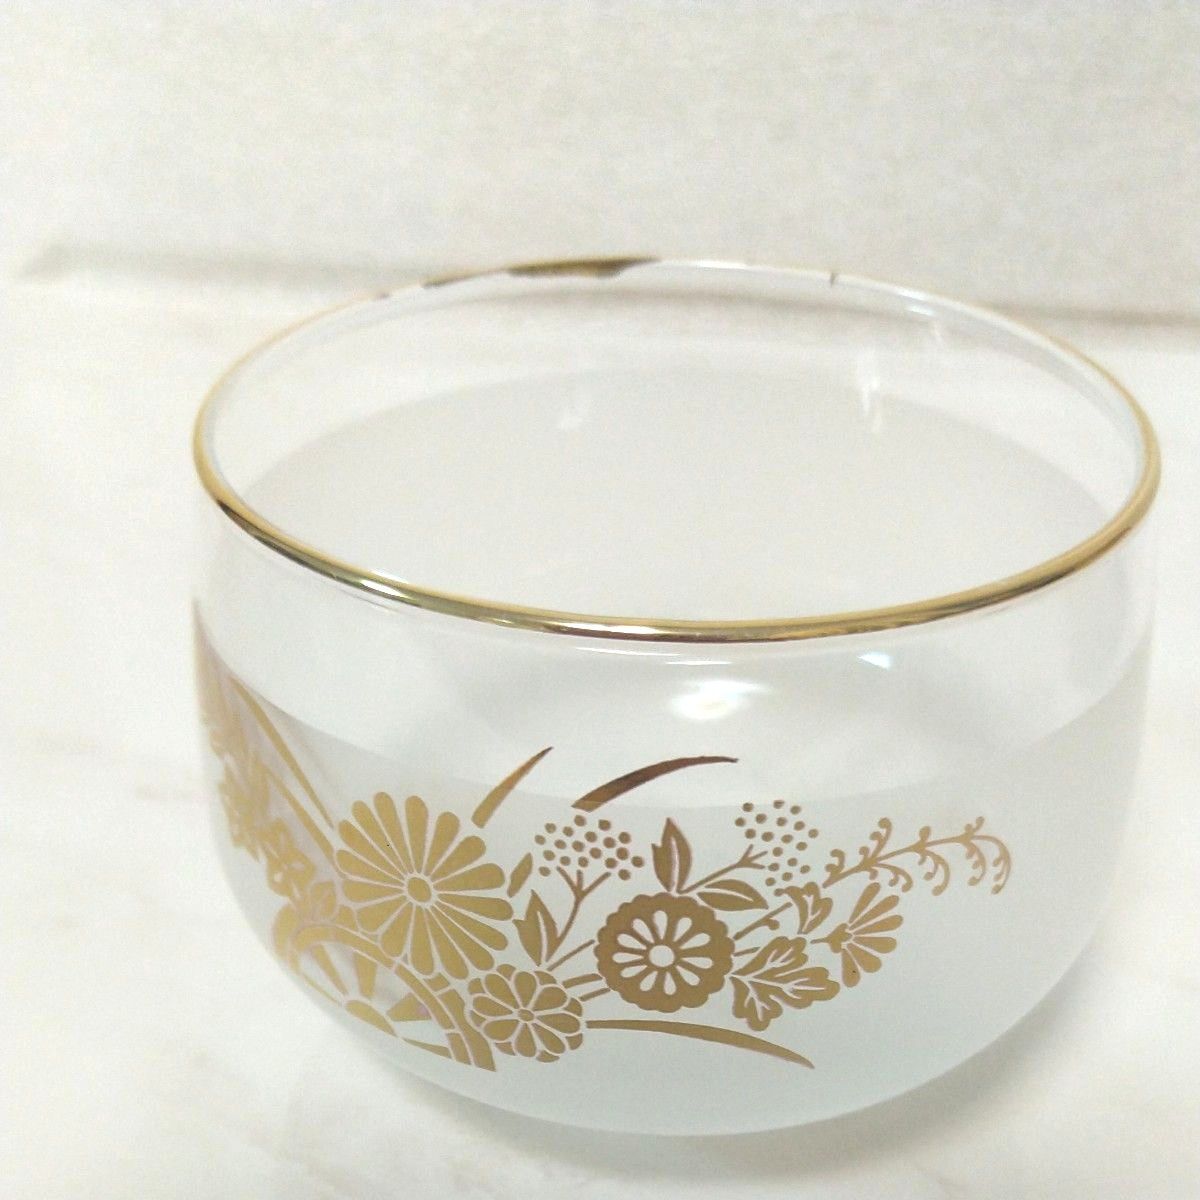 ★新品・未使用★ KAMEIGLASS JAPAN カメイガラス 日本の詩 秋篠 冷茶グラス 5客セット 昭和レトロ  花柄 